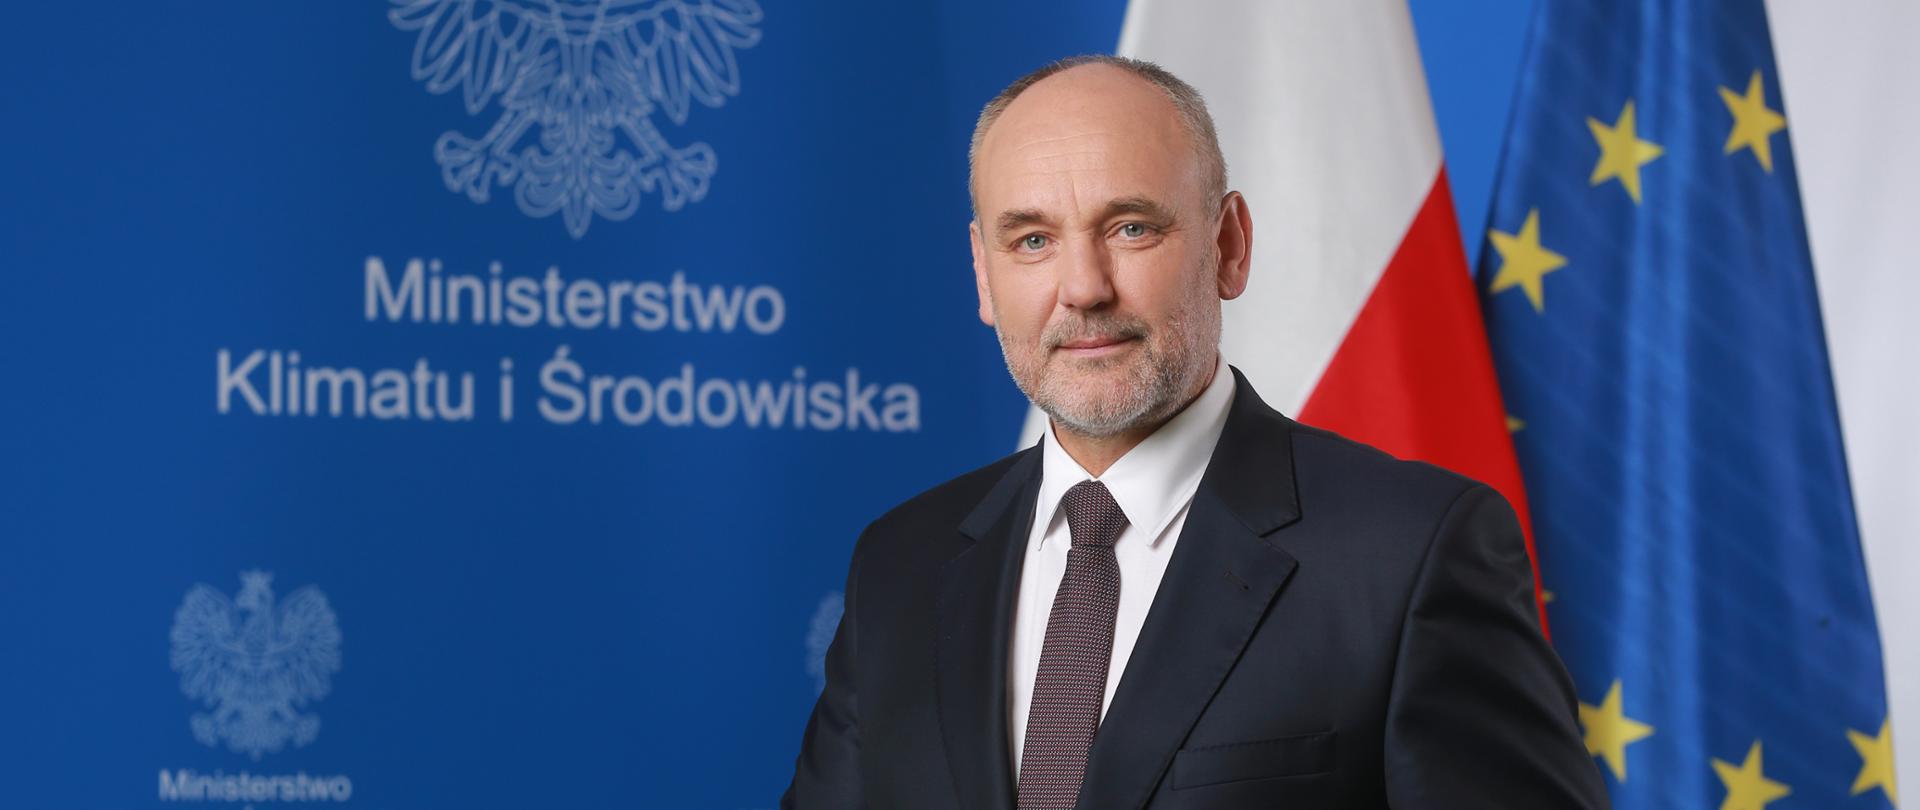 Piotr Dziadzio, Podsekretarz stanu, Główny Geolog Kraju, Pełnomocnik Rządu ds. Polityki Surowcowej Państwa 1